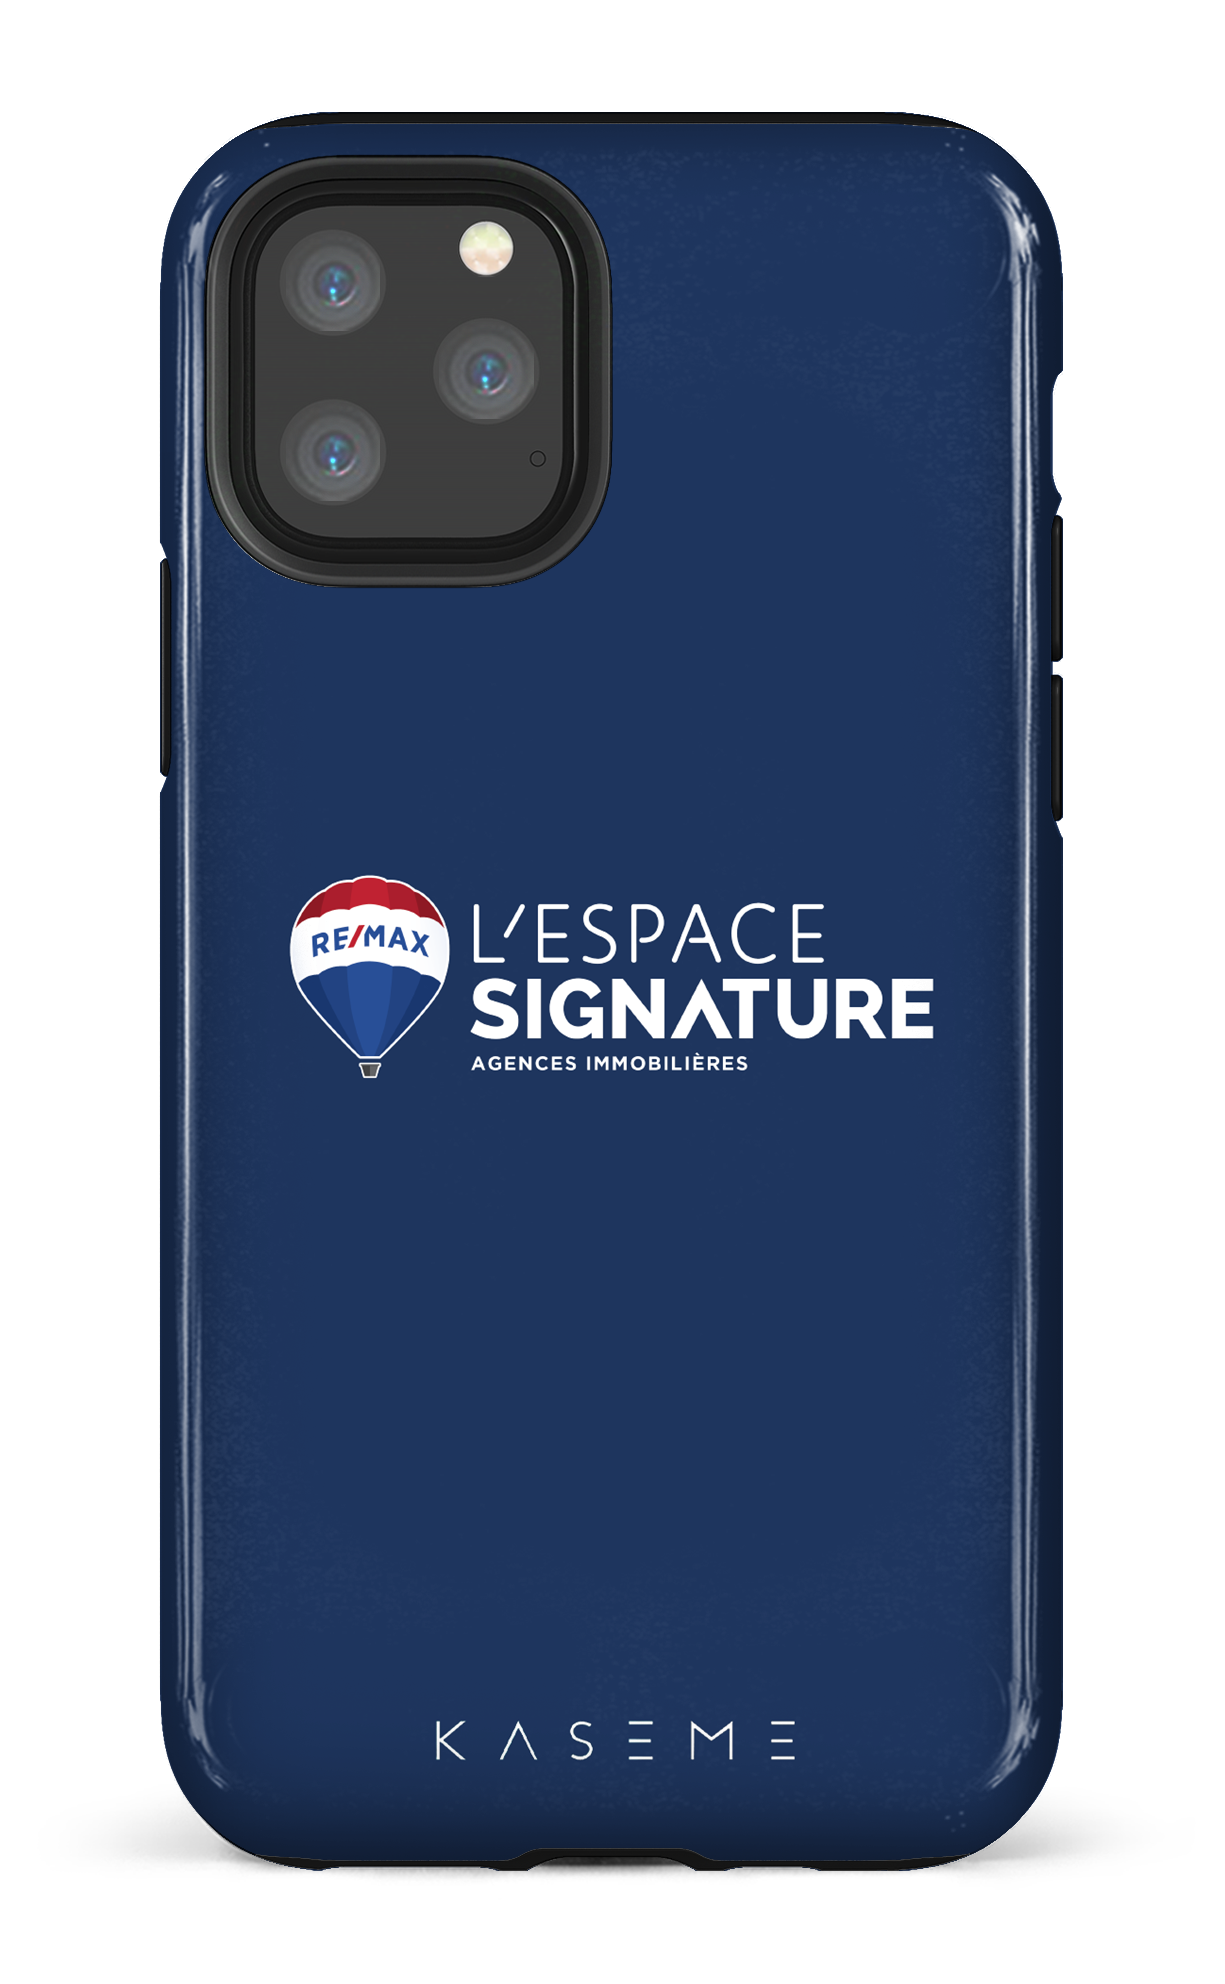 Remax Signature L'espace Bleu - iPhone 11 Pro